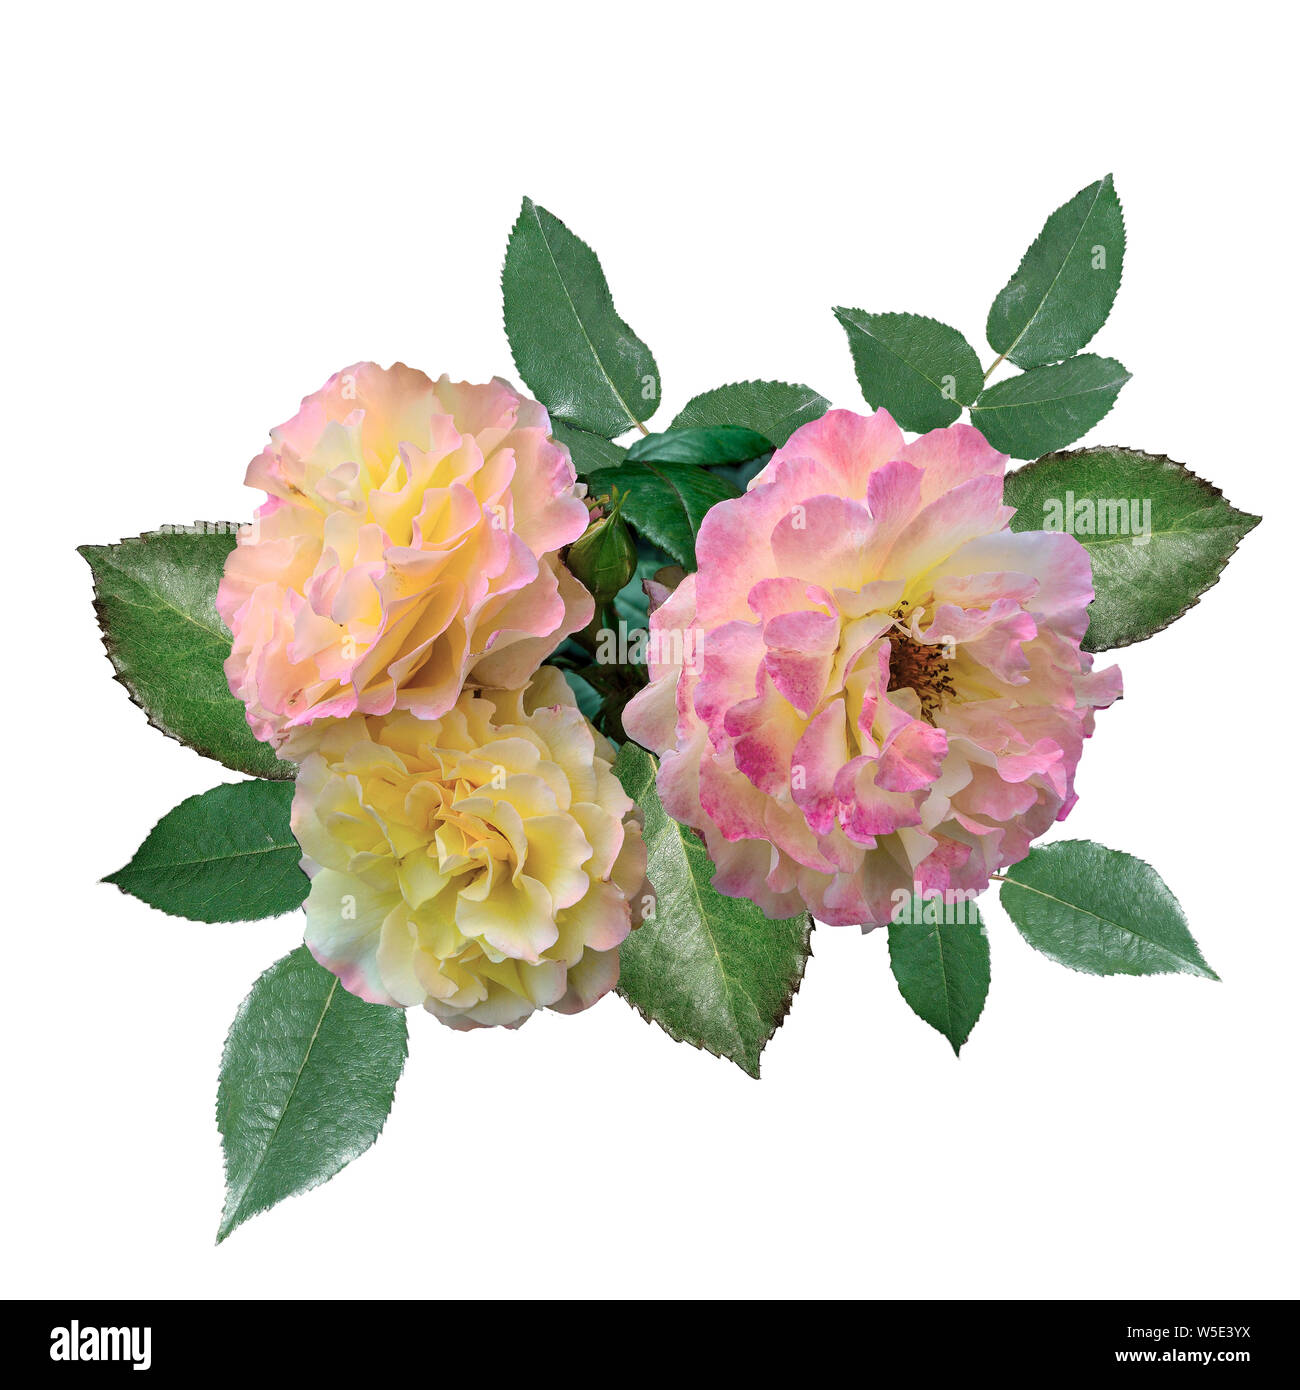 Trois roses délicates avec des pétales jaune-rose et vert feuilles close up sur fond blanc isolé. Magnifique bouquet de fleurs rose doux Banque D'Images